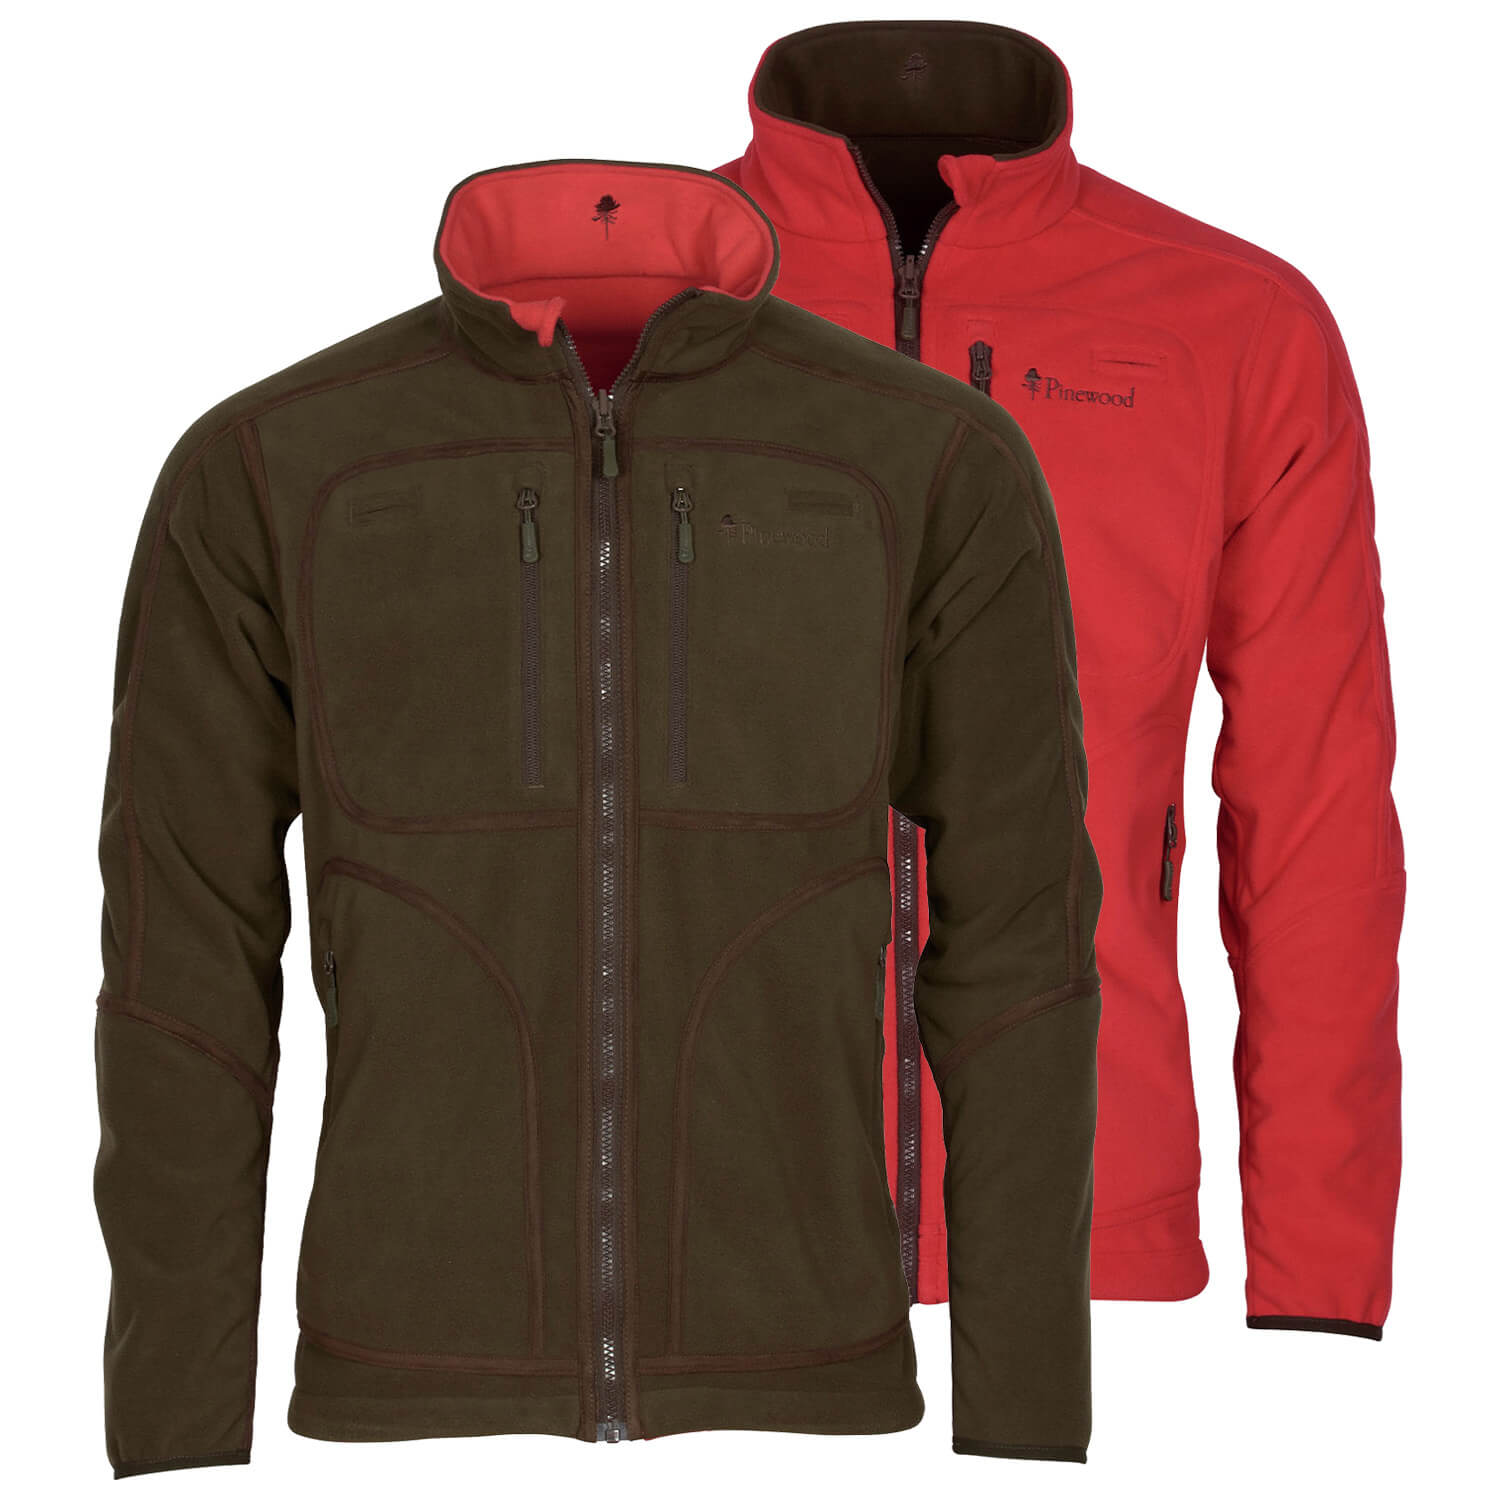 Pinewood reversible jacket Furudal (red/brown)